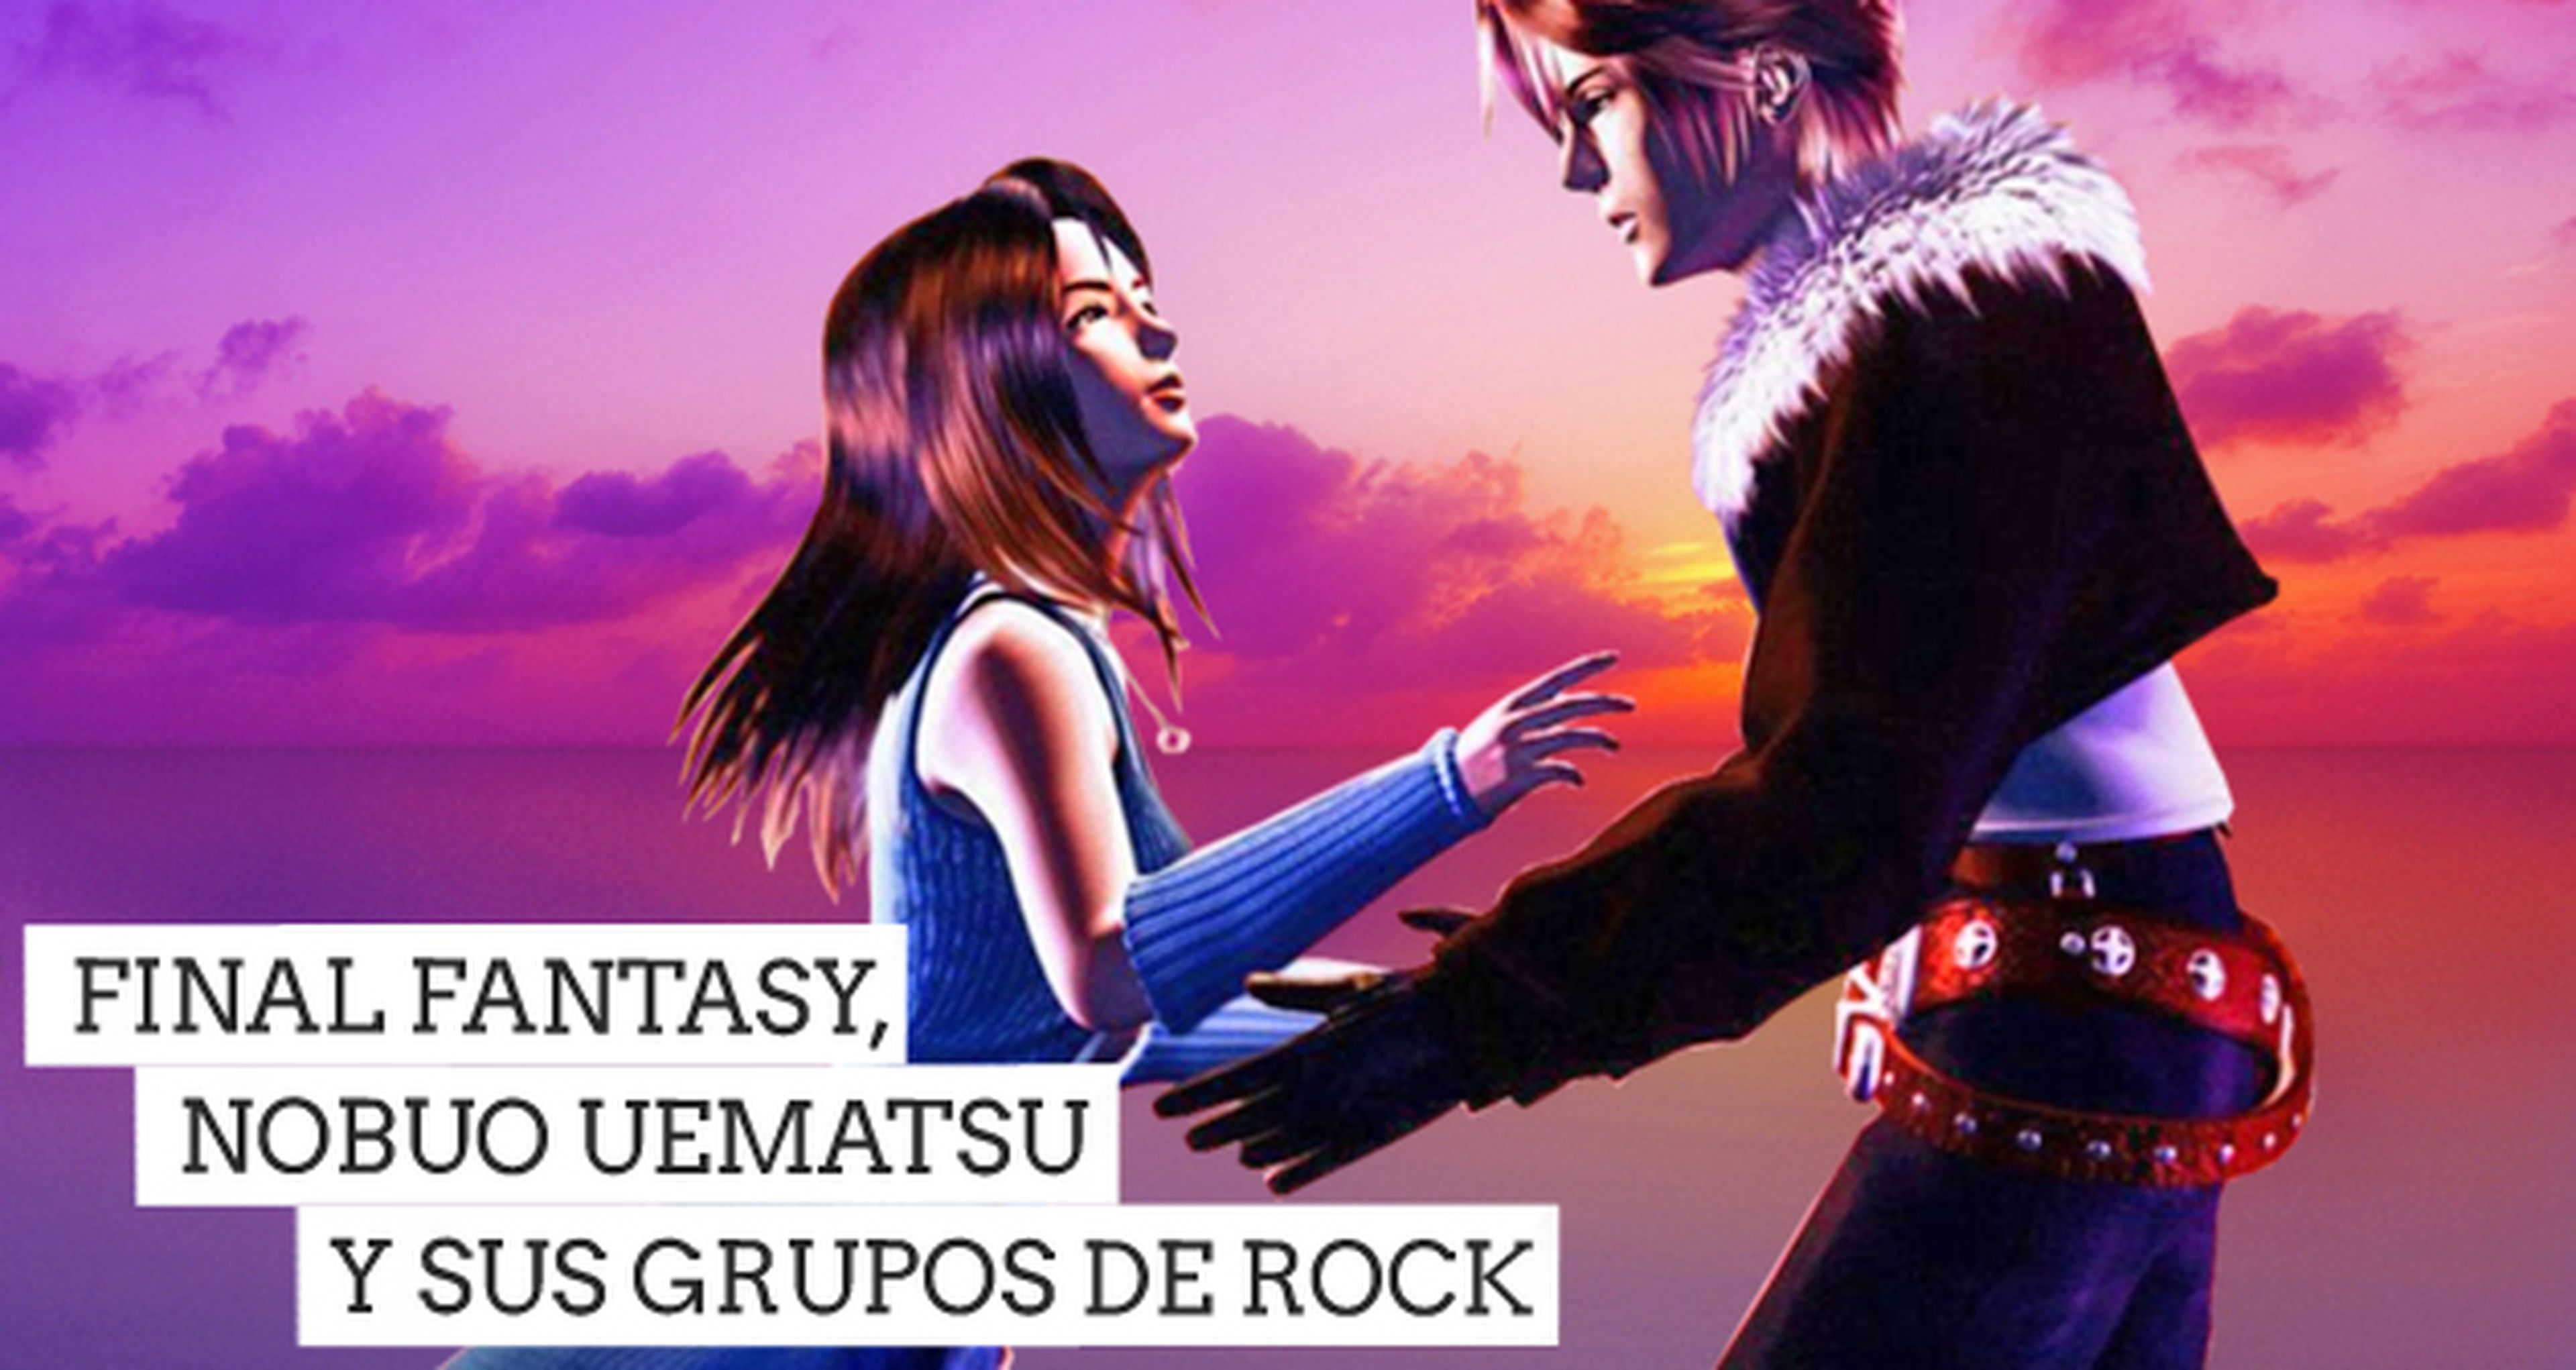 Final Fantasy, Nobuo Uematsu y sus grupos rock